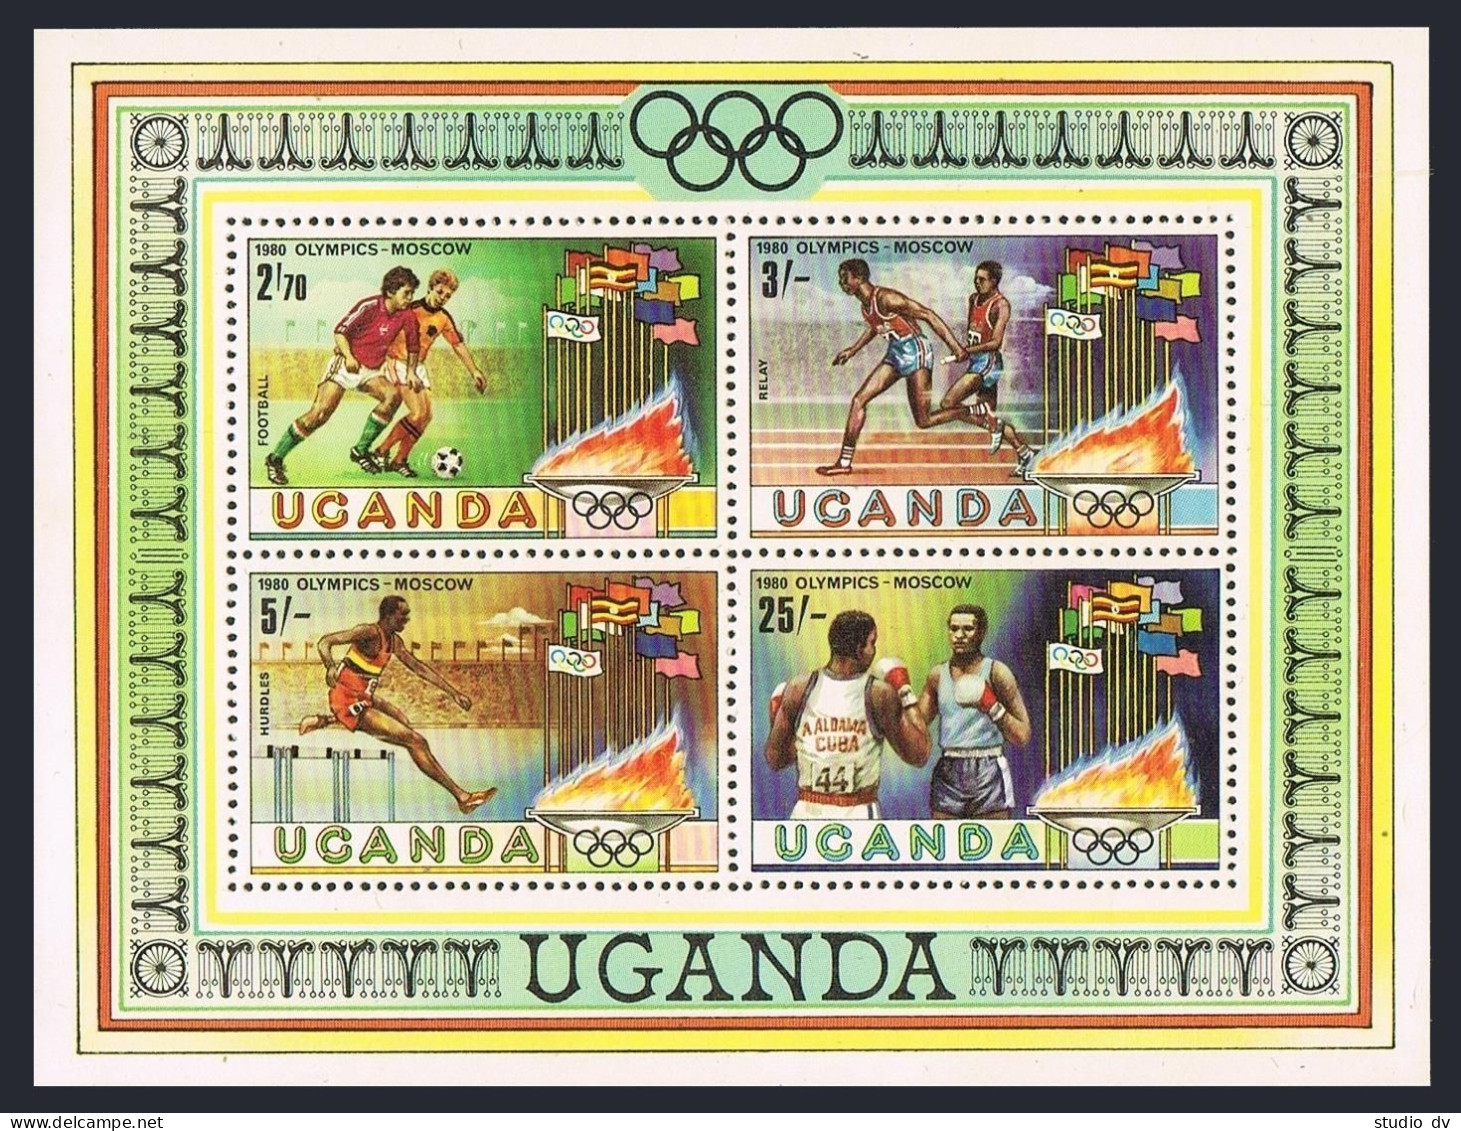 Uganda 299-302, 303 Sheet, MNH. Mi 278-281, Bl.23. Olympics Moscow-1980. Soccer, - Ouganda (1962-...)